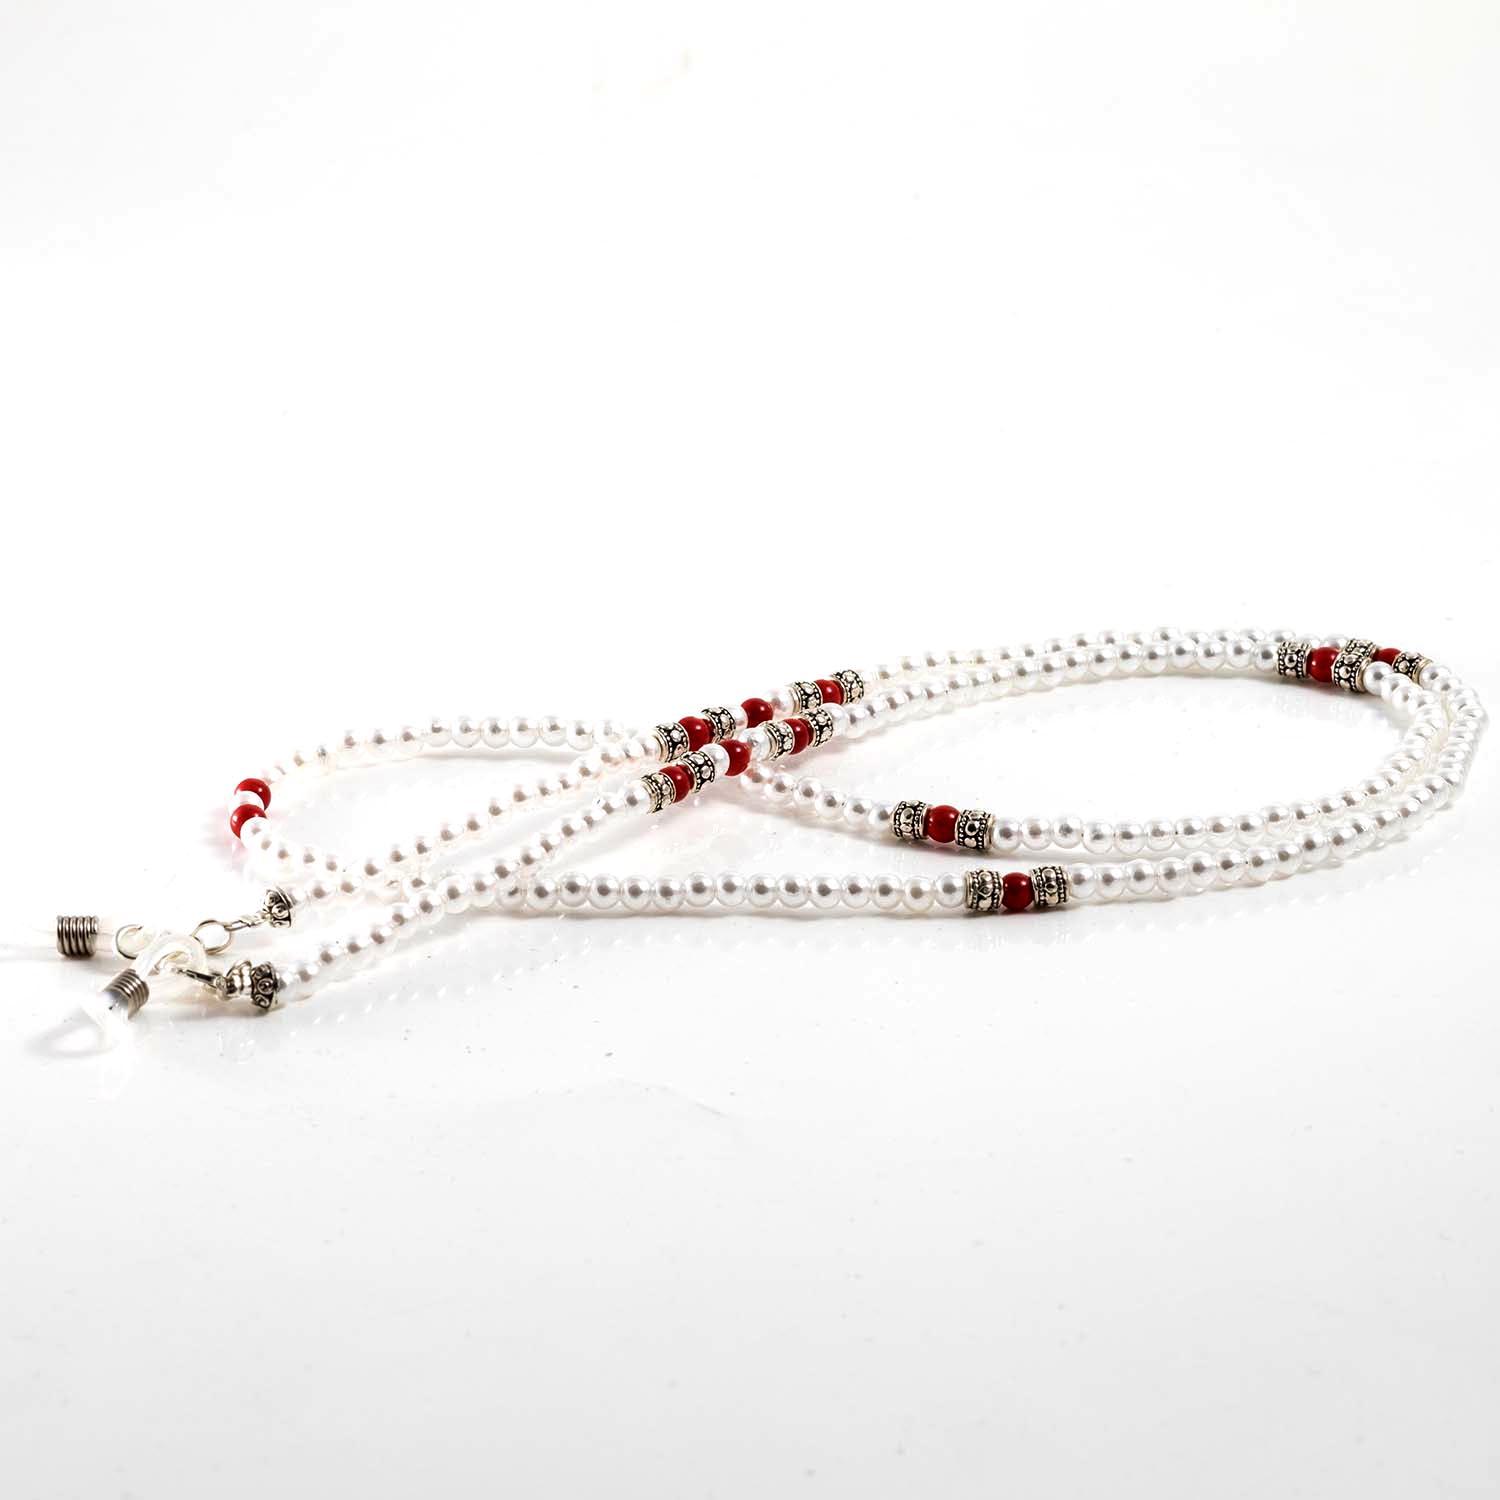 Cordón para gafas cuentas blancas efecto perla decorado hecho a mano